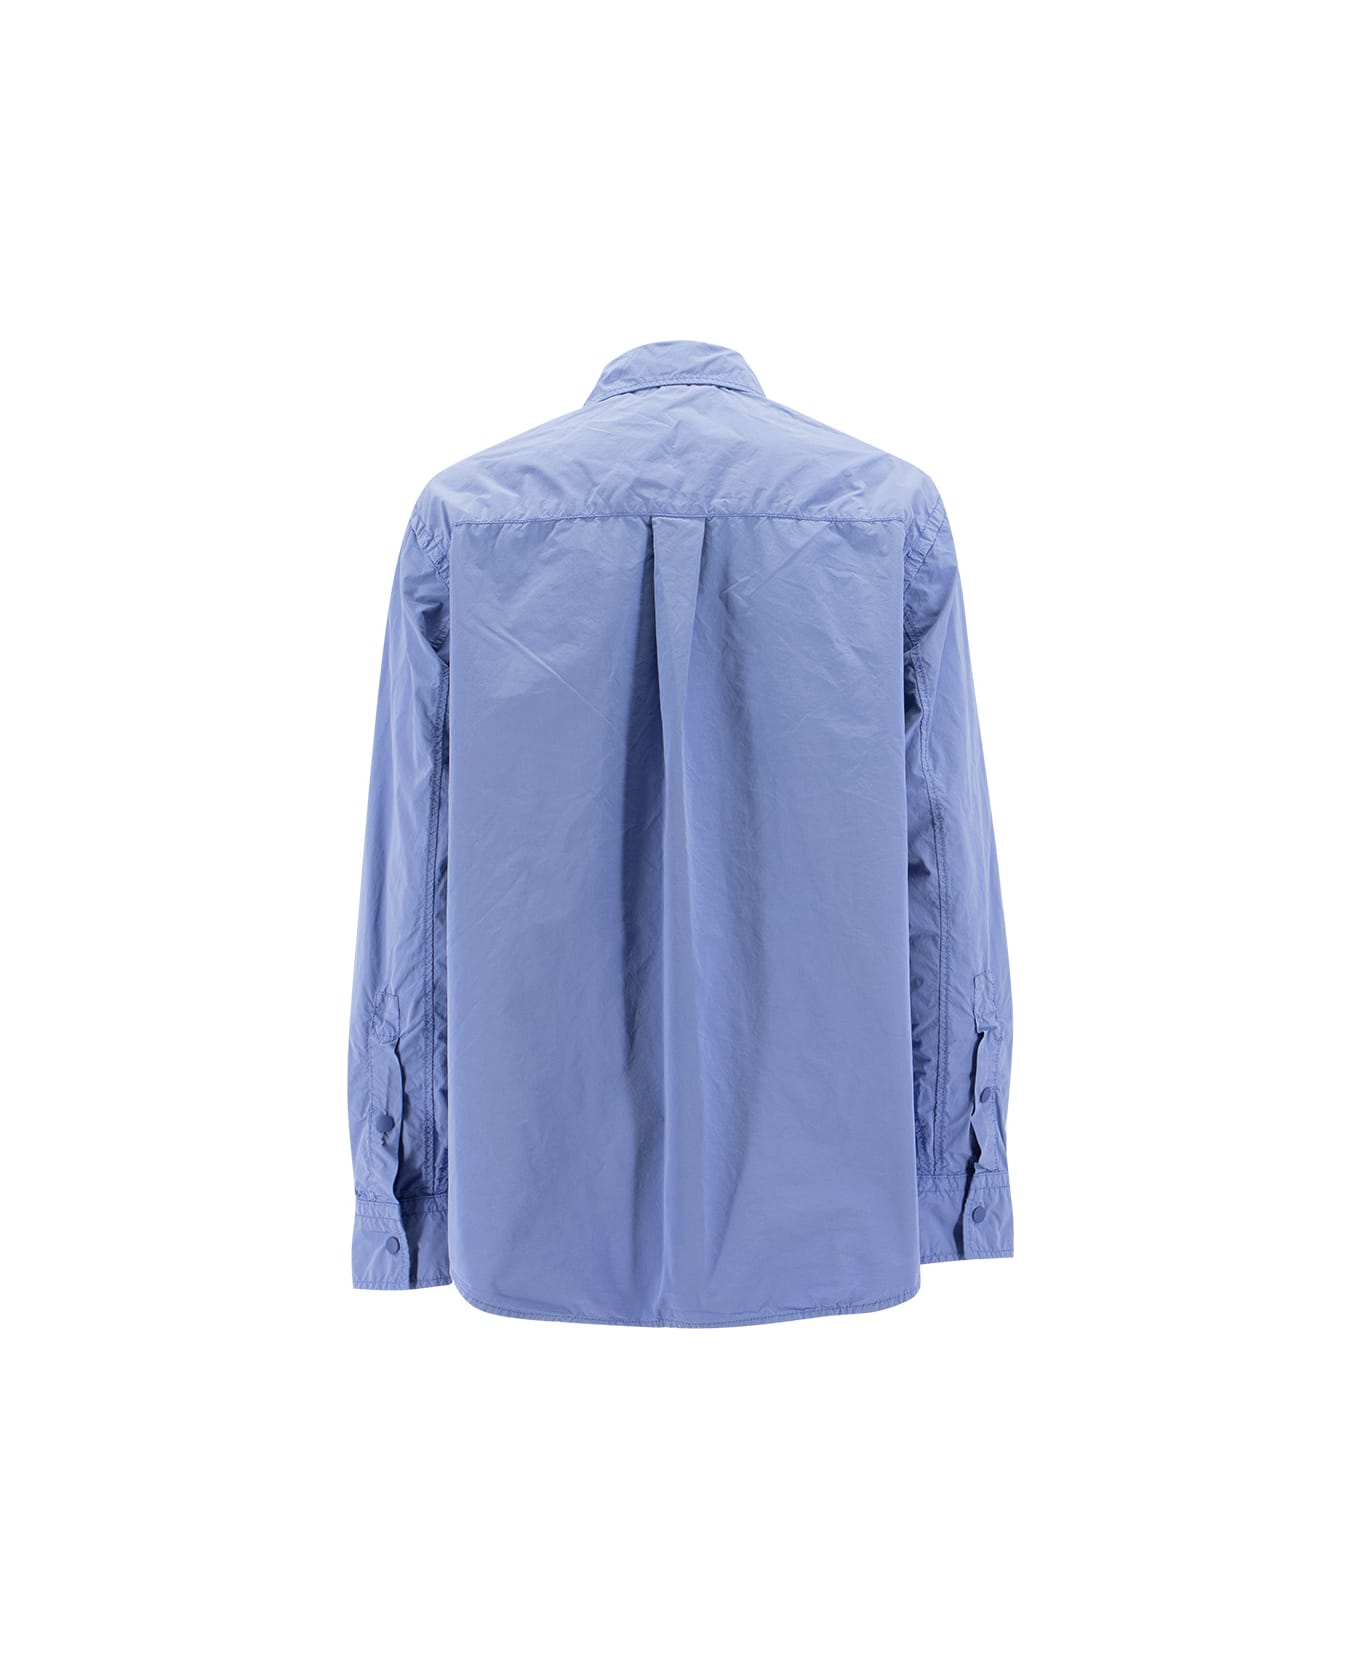 Aspesi Jacket - LIGHT BLUE